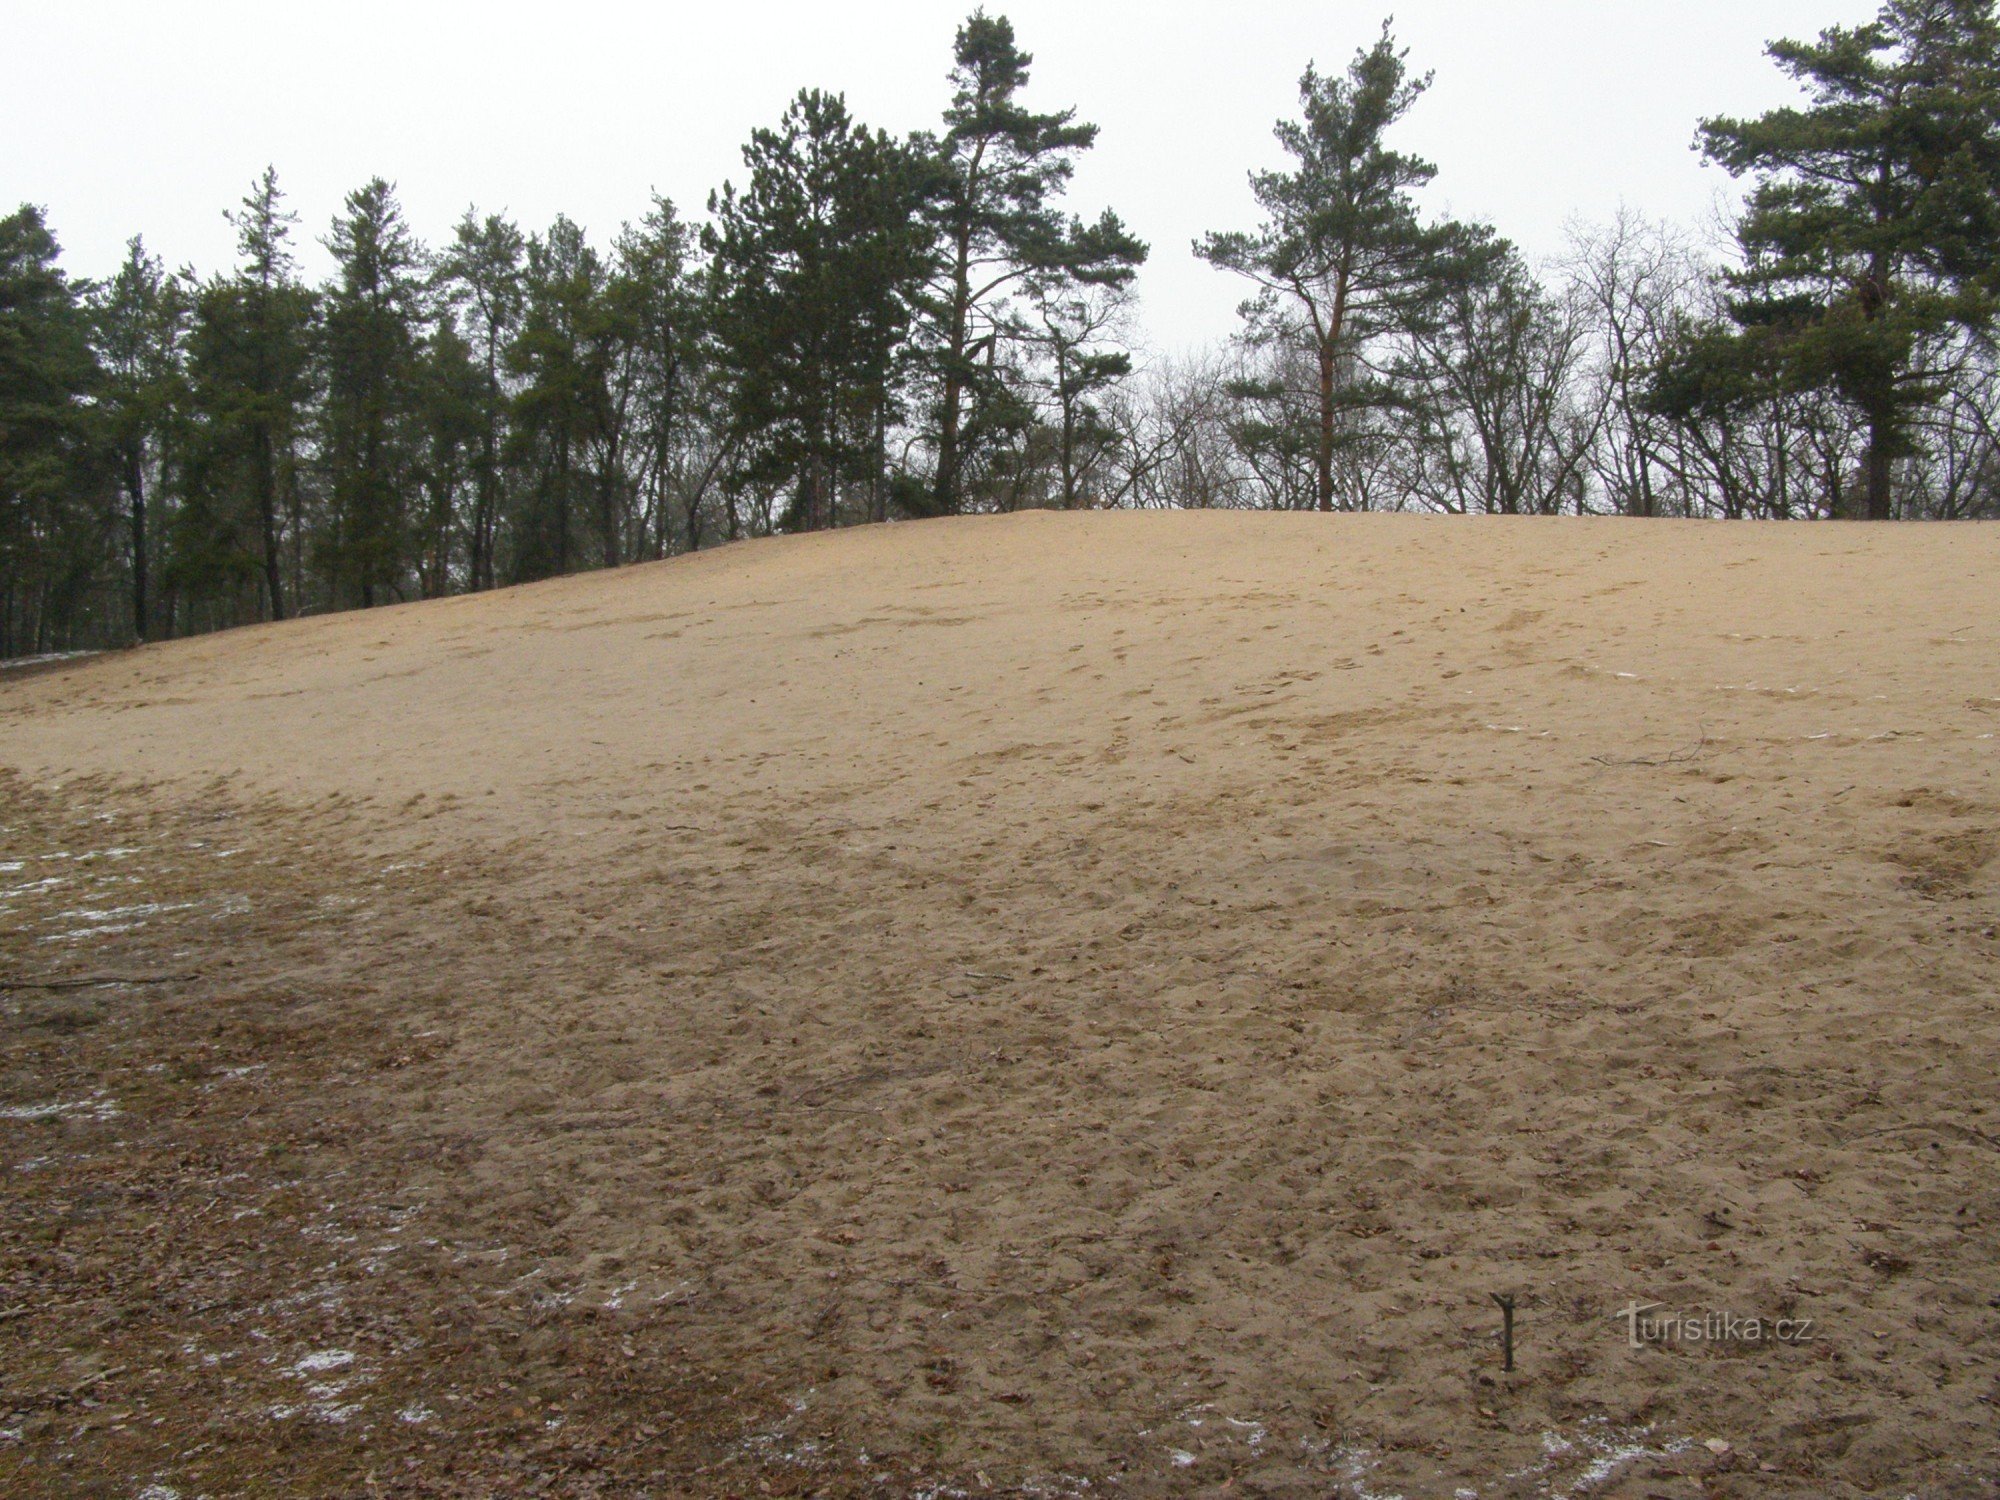 straripamento di sabbia - inverno